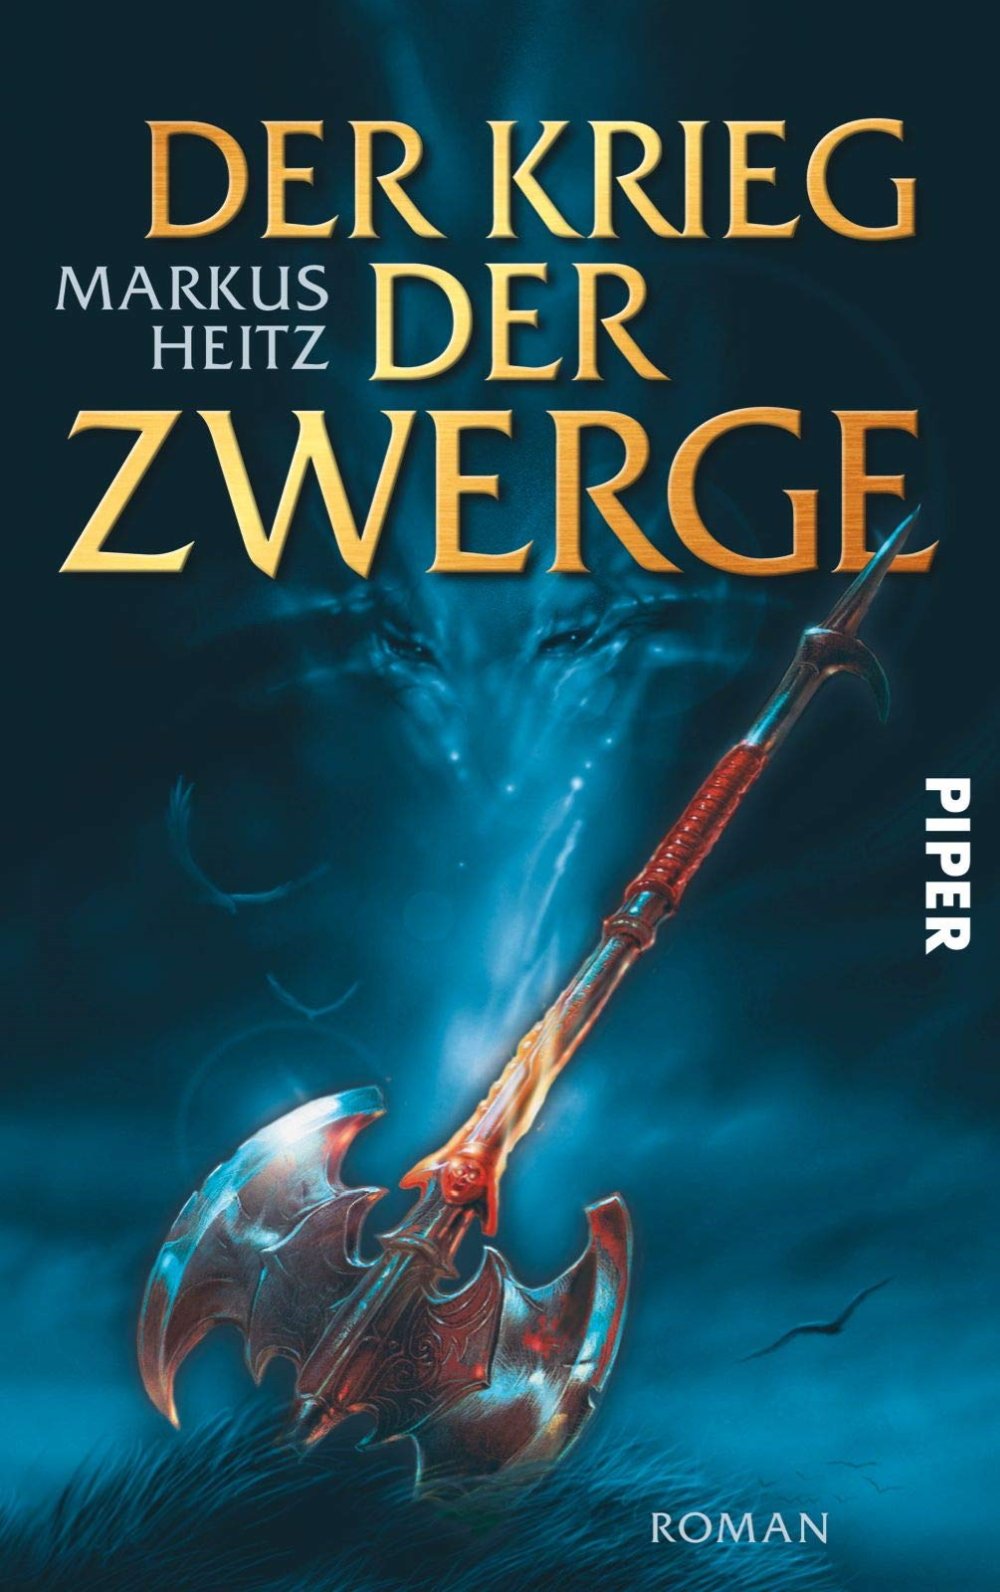 Cover des Buches "Der Krieg der Zwerge" von Markus Heitz